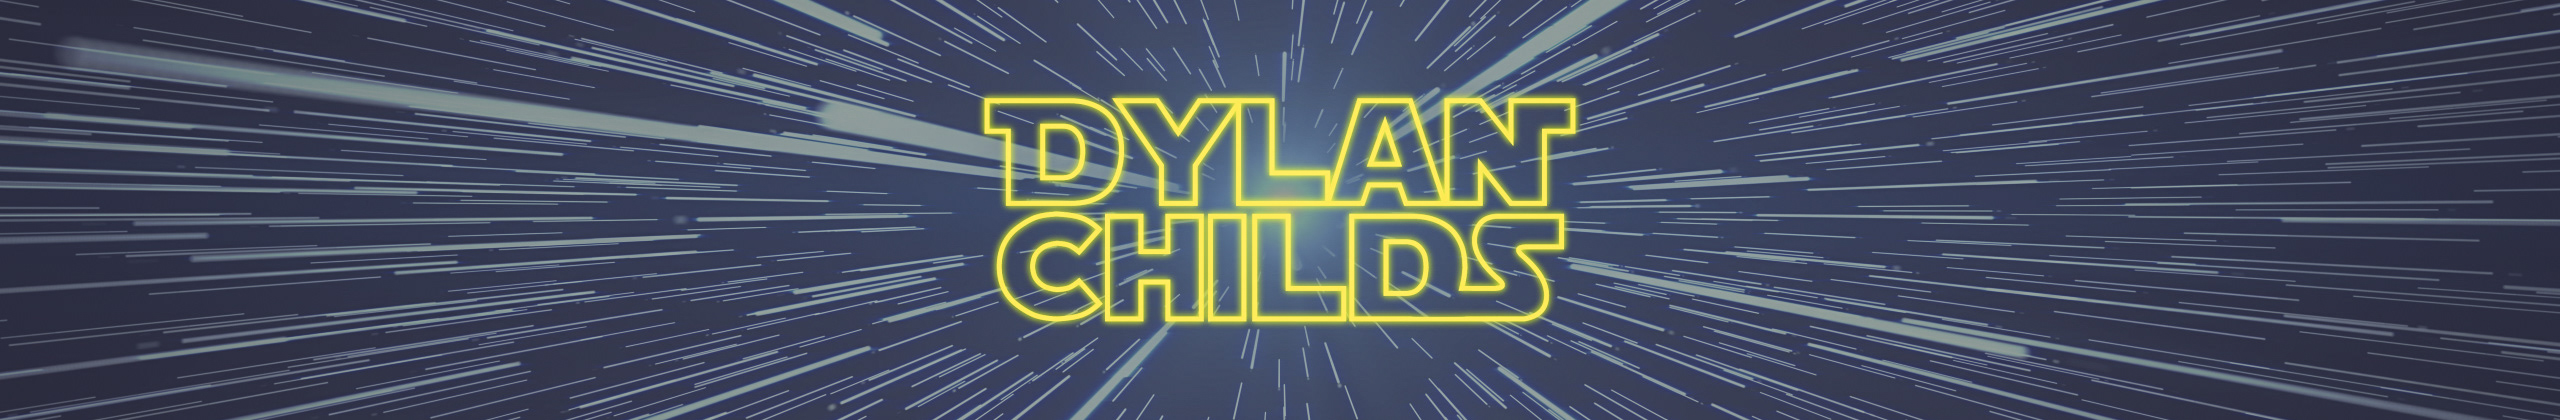 Dylan Childs profil başlığı